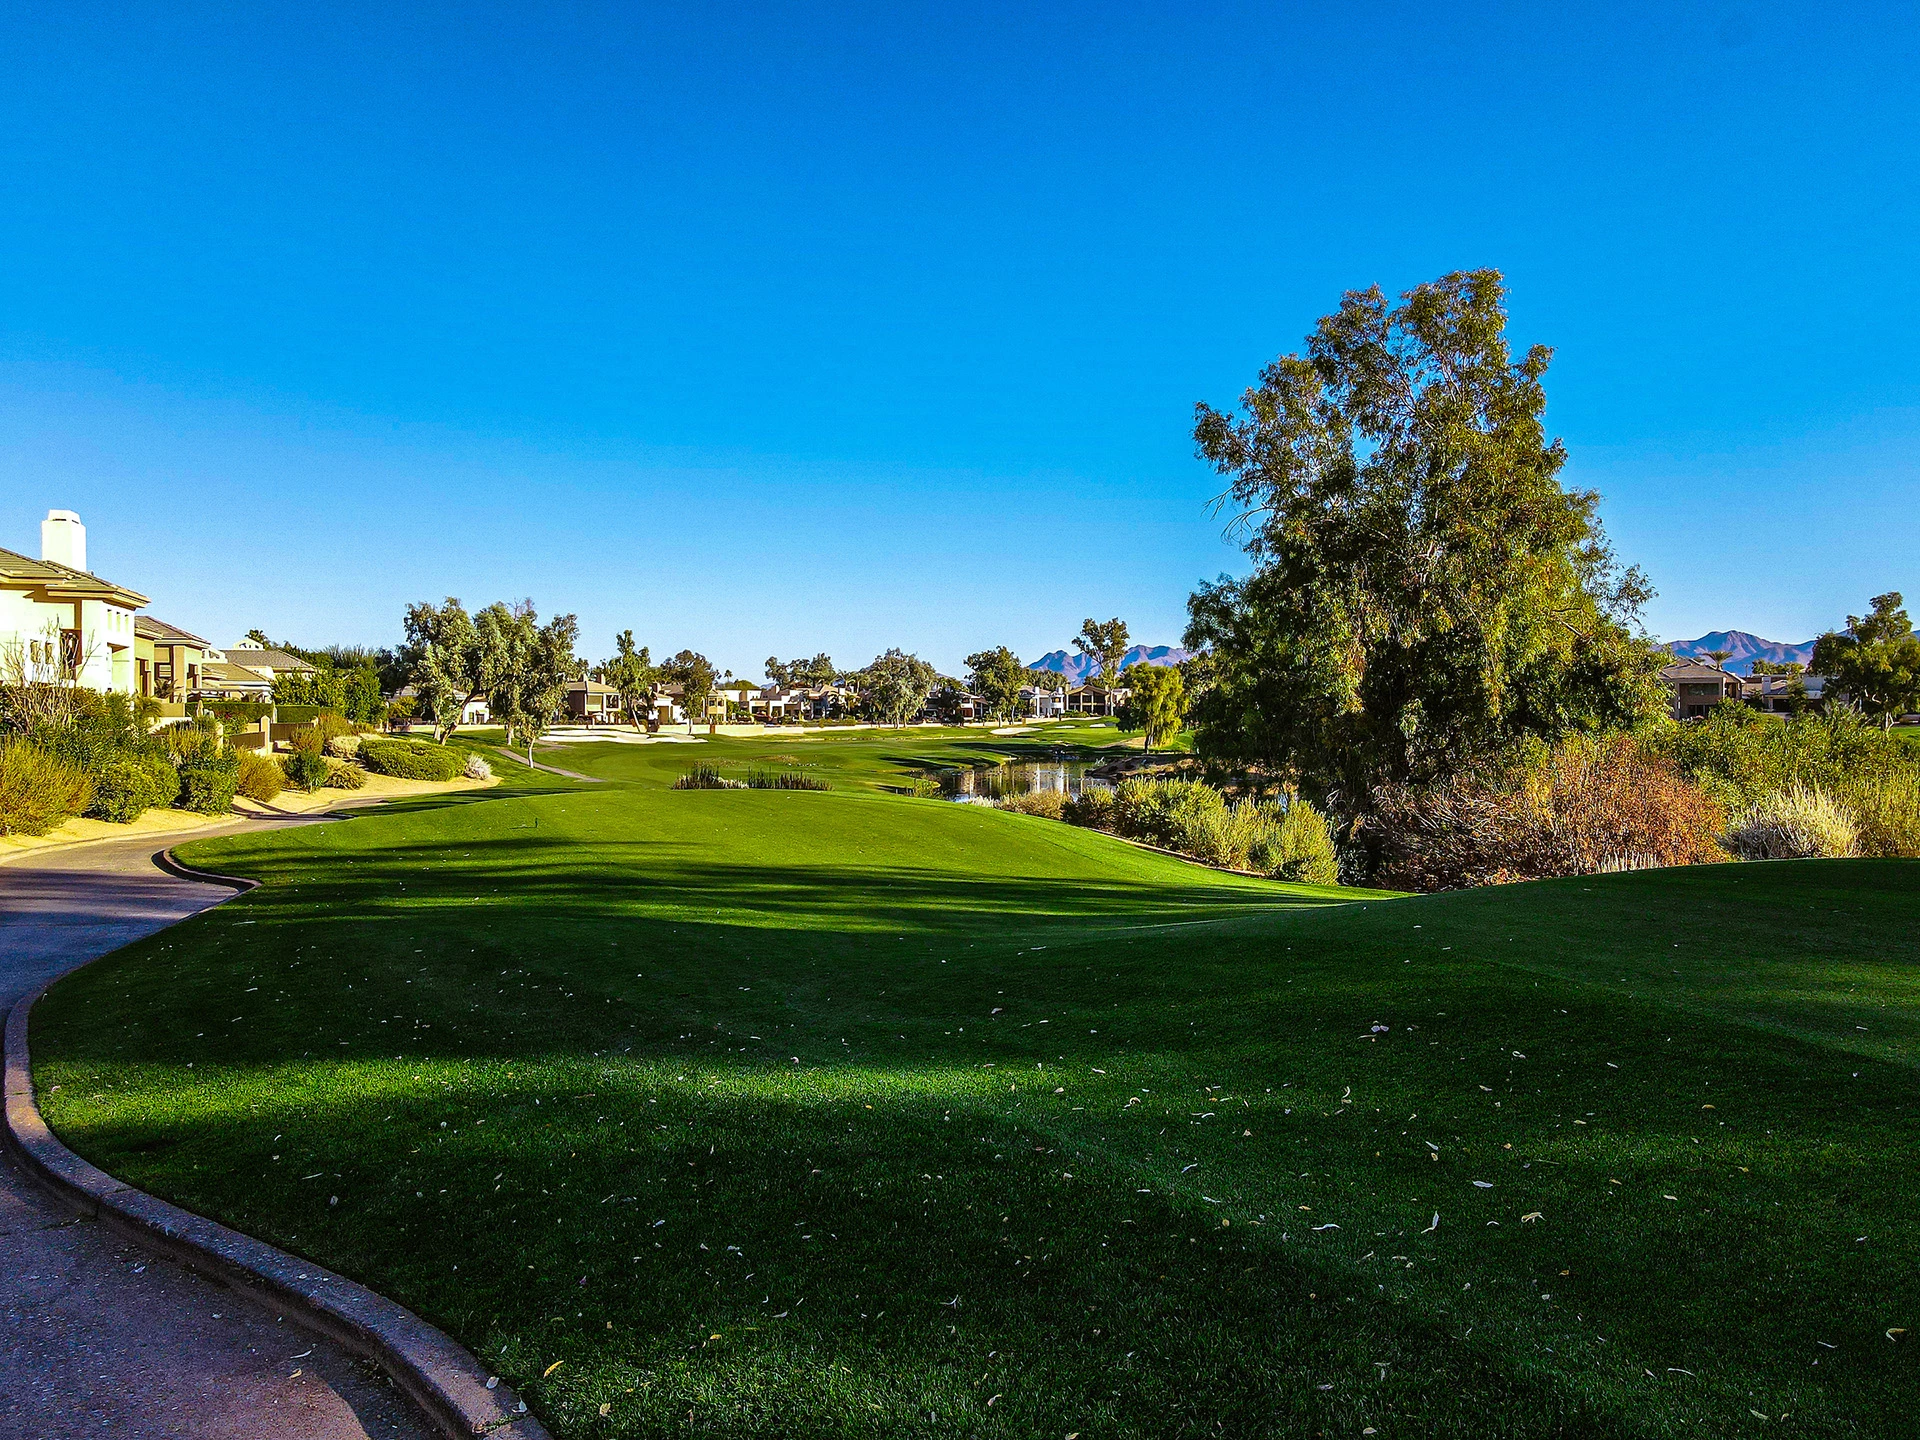 Location de clubs de golf dans la région de Phoenix Scottsdale